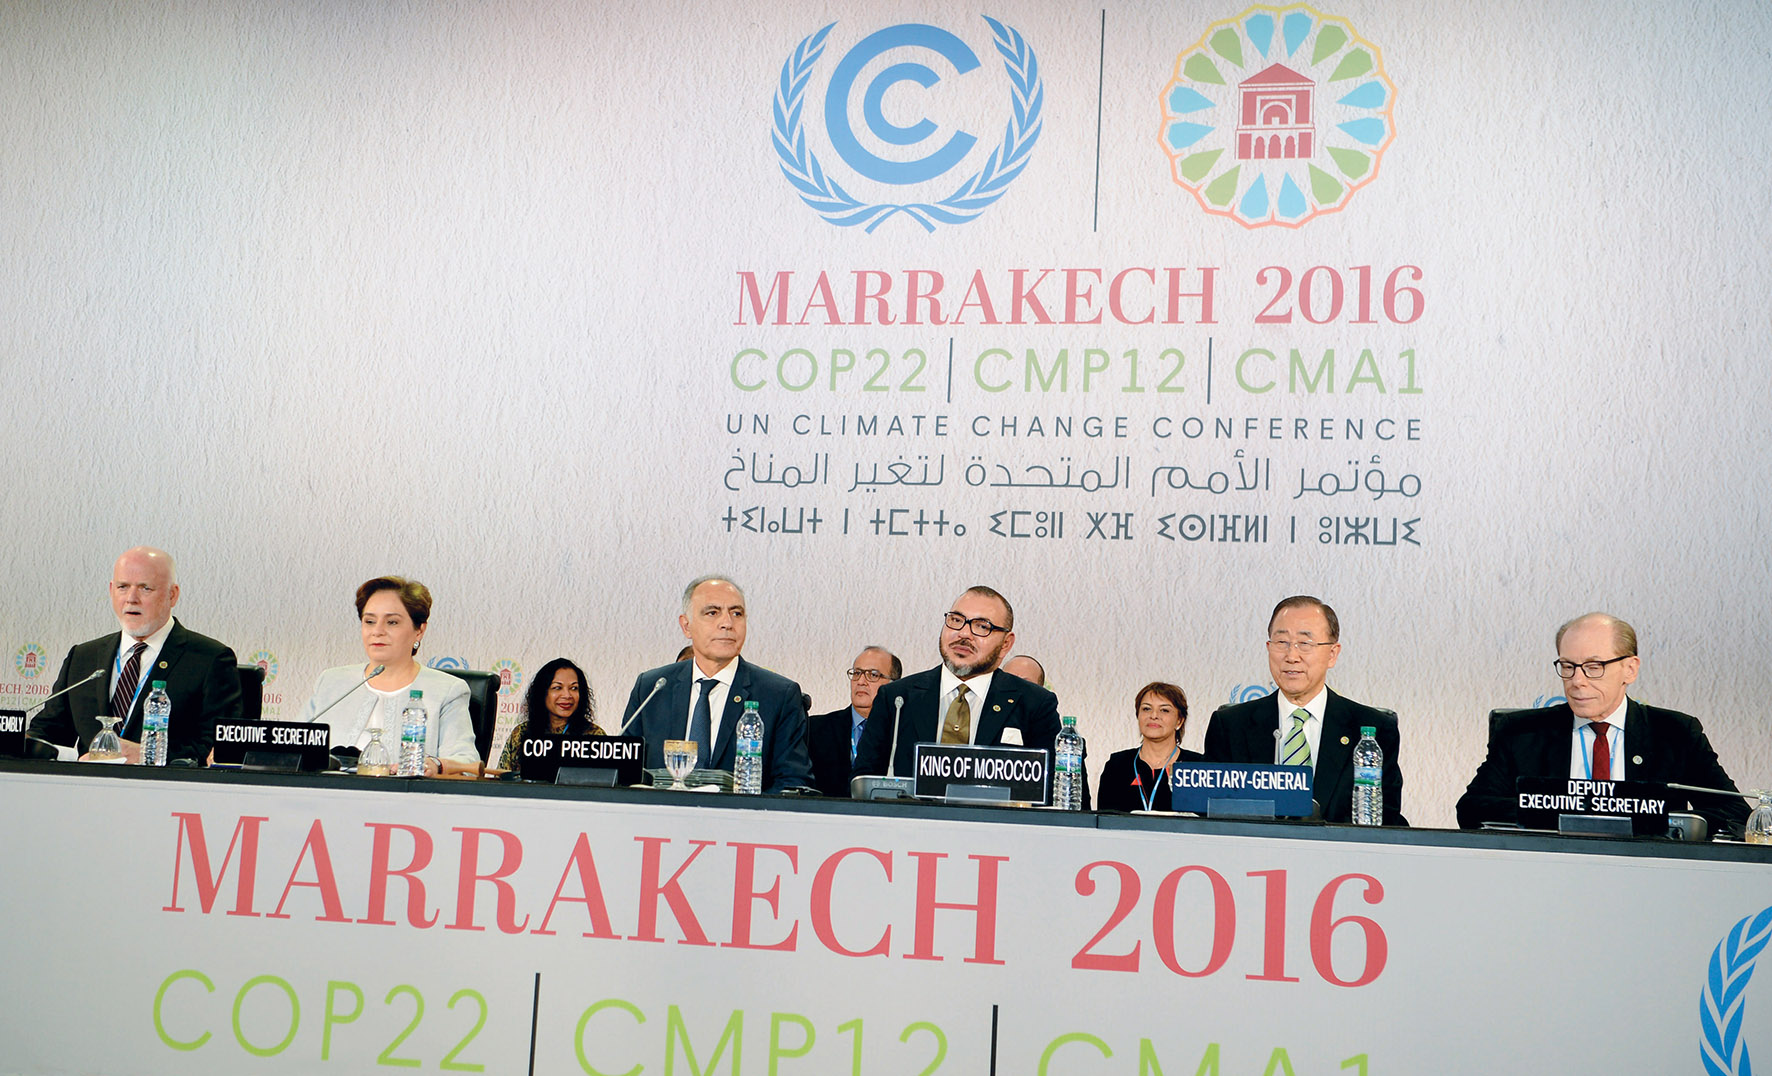 Grand-messe climatique : Les temps forts de la COP22 